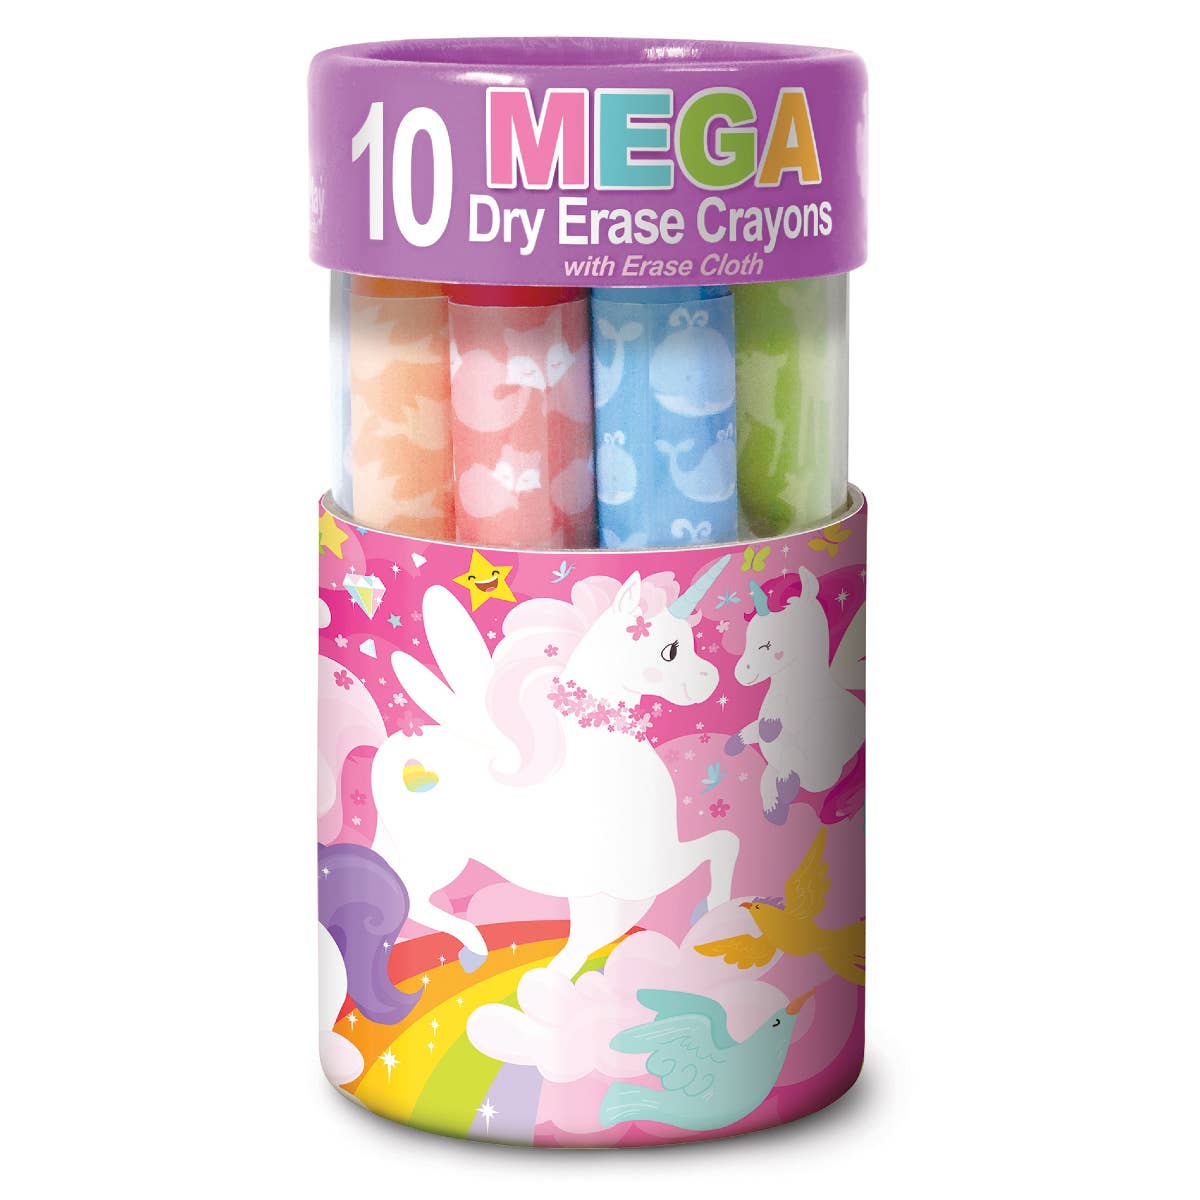 The Piggy Story Unicorn Land Dry Erase Mega Crayons